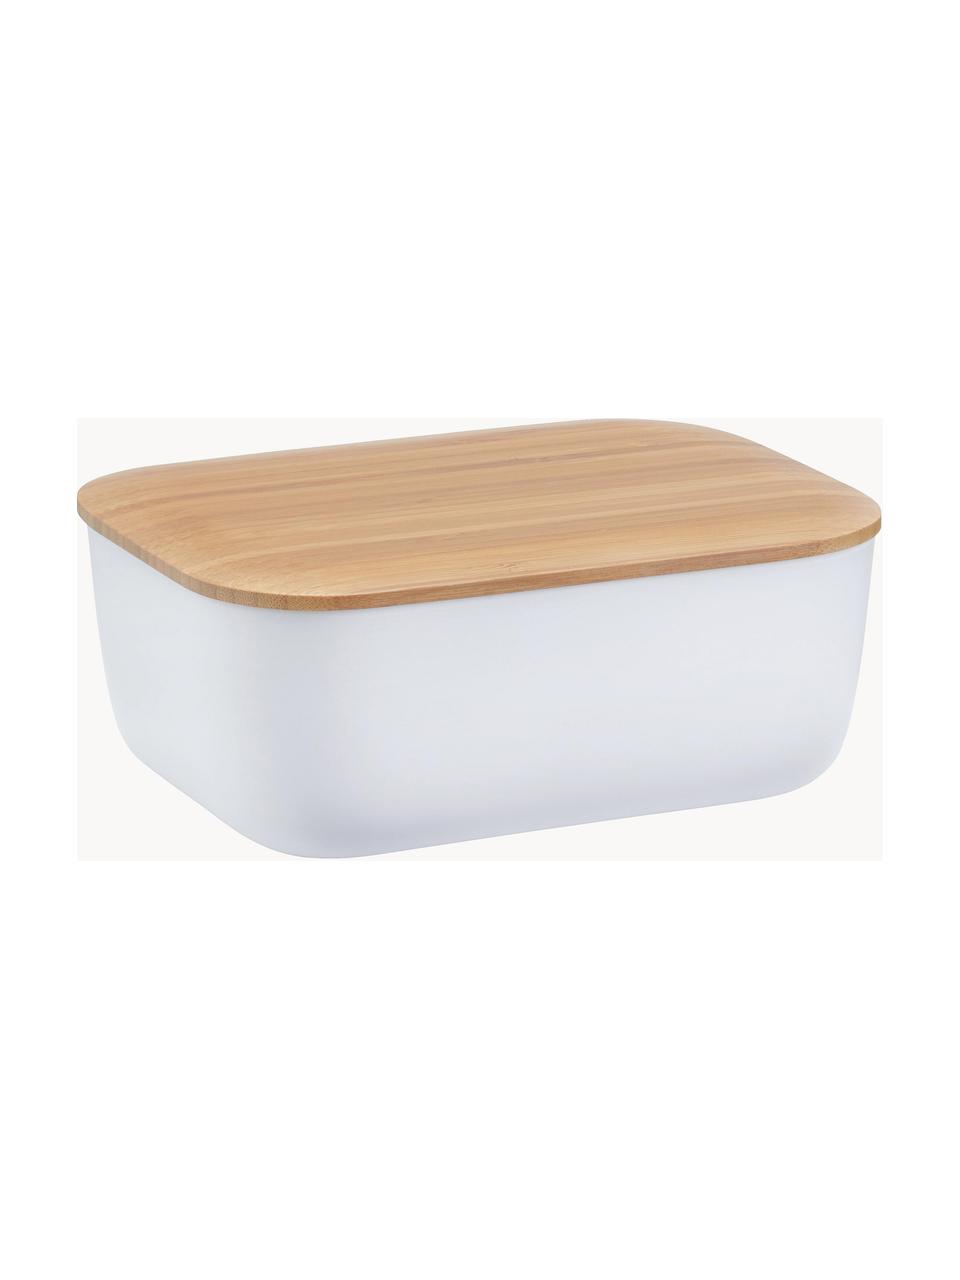 Botervloot Box-It in wit met bamboe deksel, Deksel: bamboehout, Wit, bamboehoutkleurig, B 15 x H 7 cm